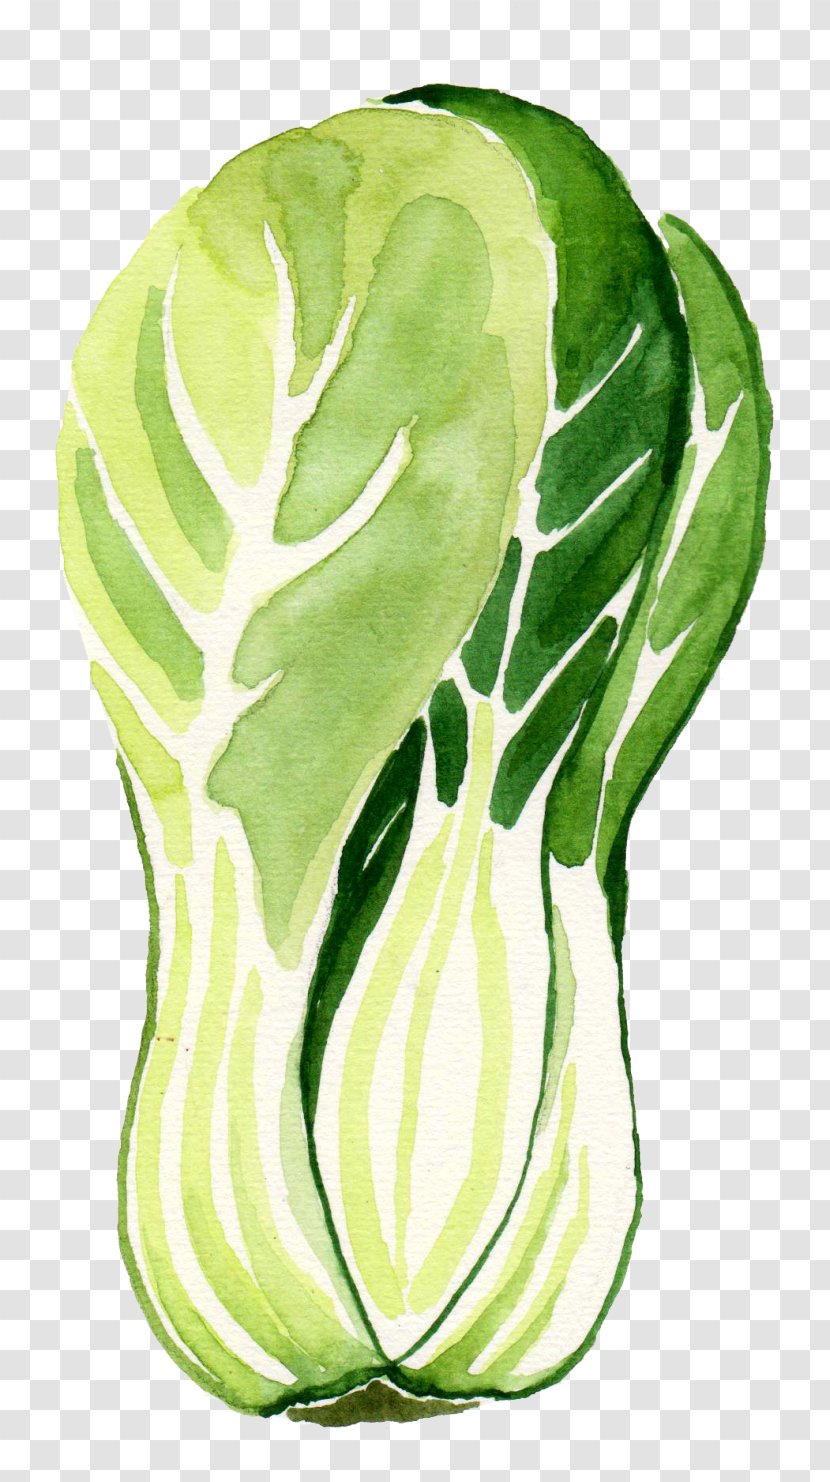 Green Leaf Background - Food Cruciferous Vegetables Transparent PNG